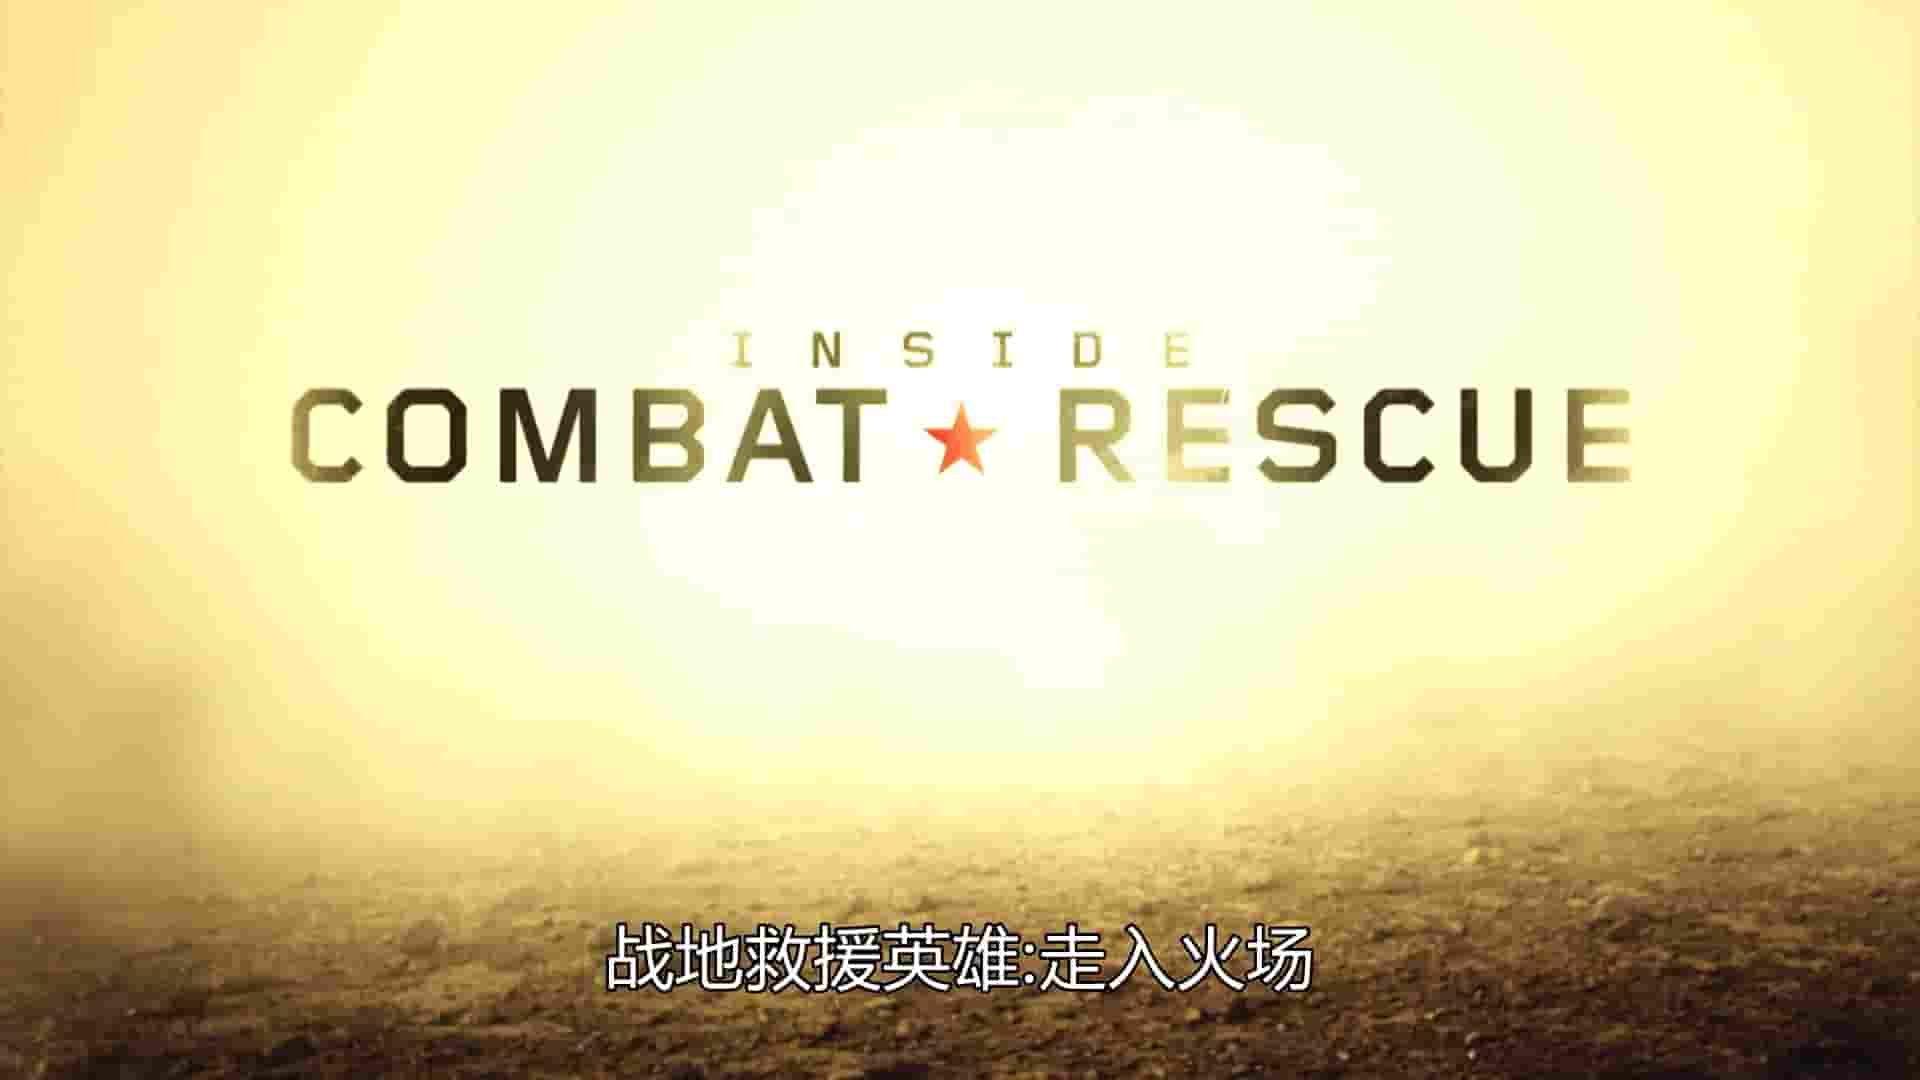 国家地理频道《战地救援英雄 Inside Combat Rescue 2013》全6集 英语中字 1080P高清网盘下载